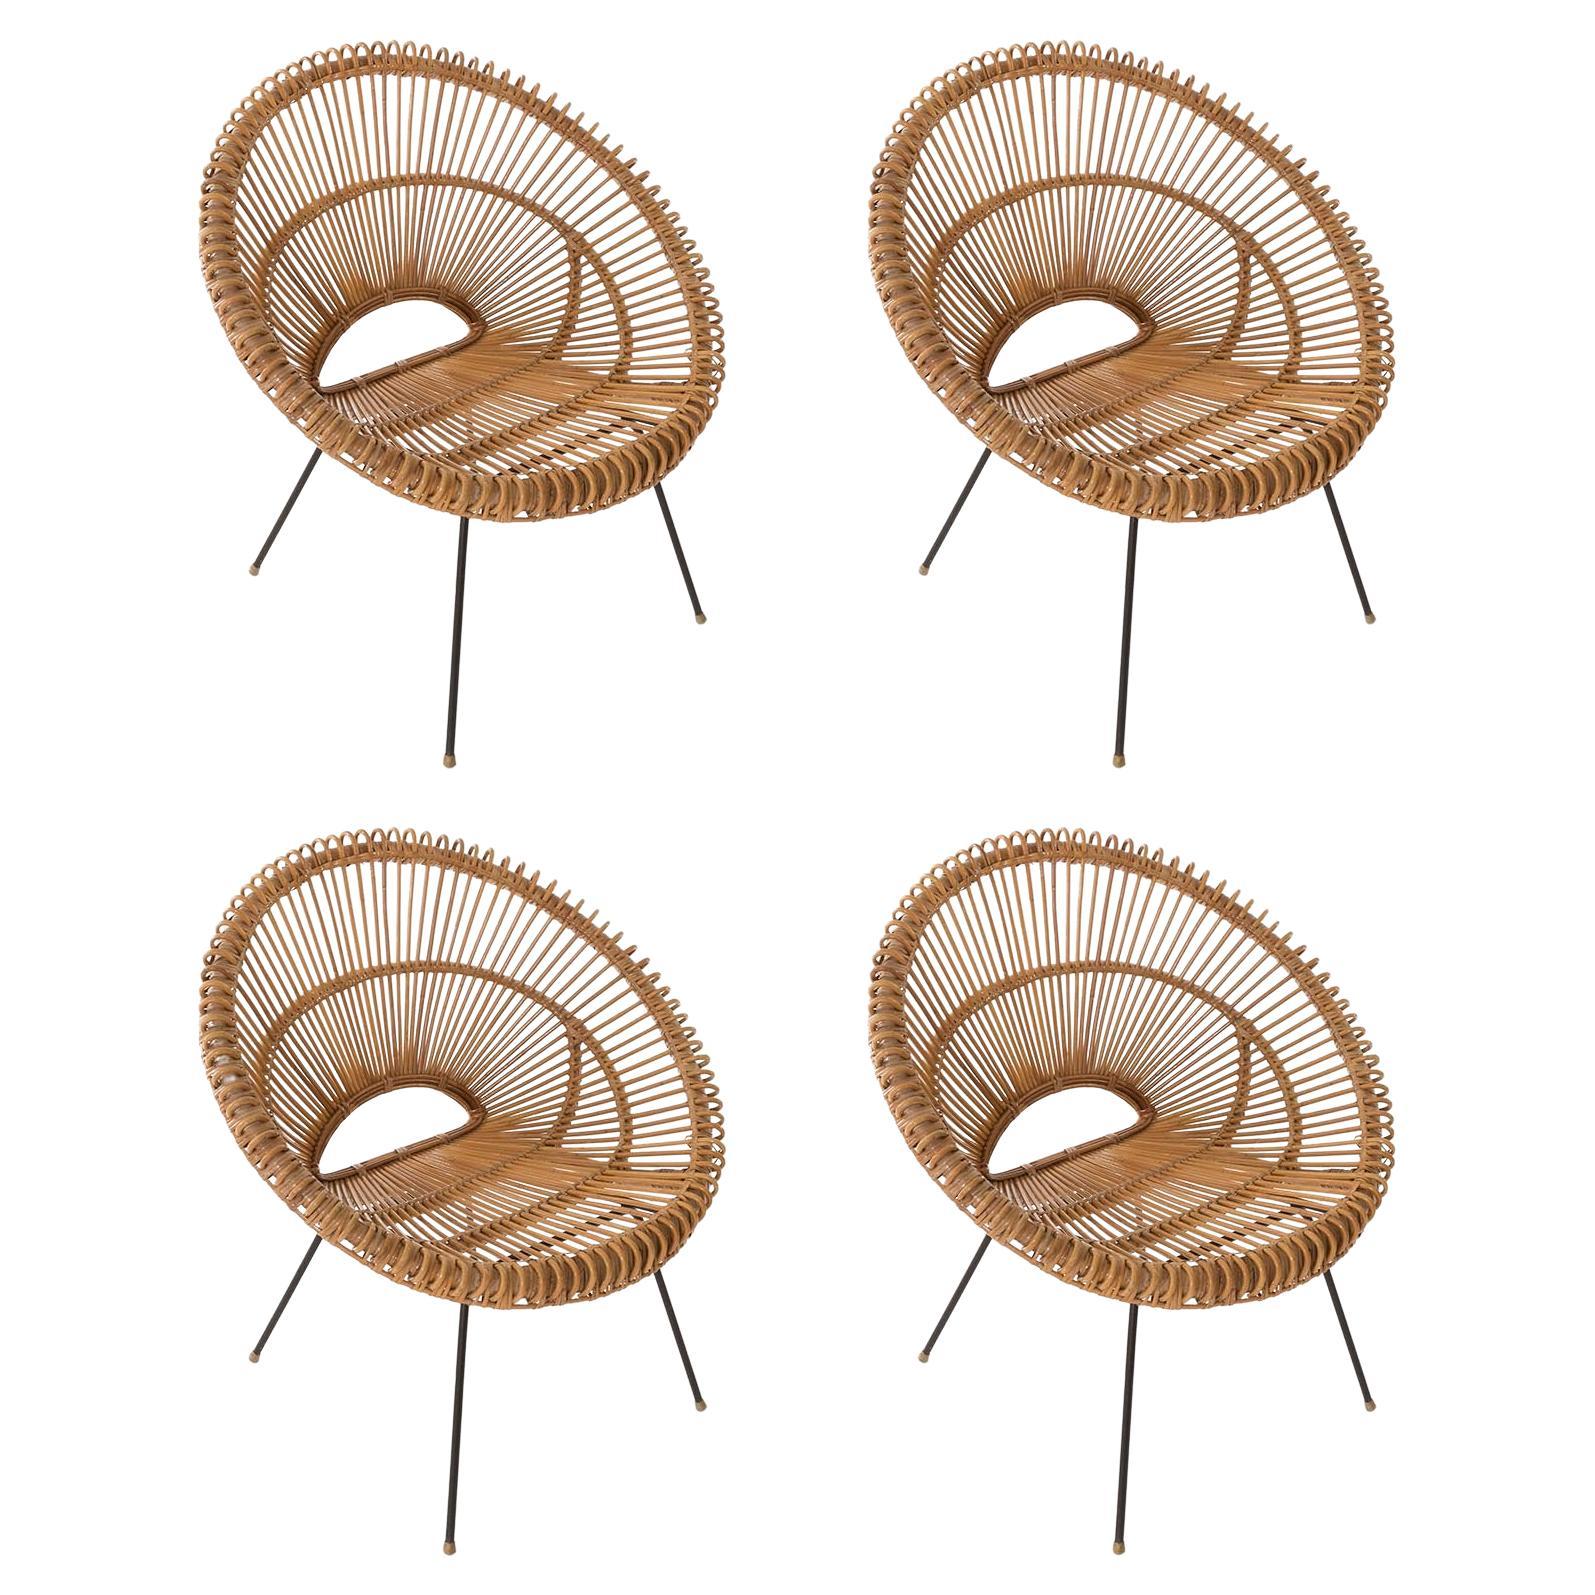 Ensemble de quatre chaises en bambou et rotin de style mi-siècle moderne, Janine Abraham, Dirk Rol, 1960